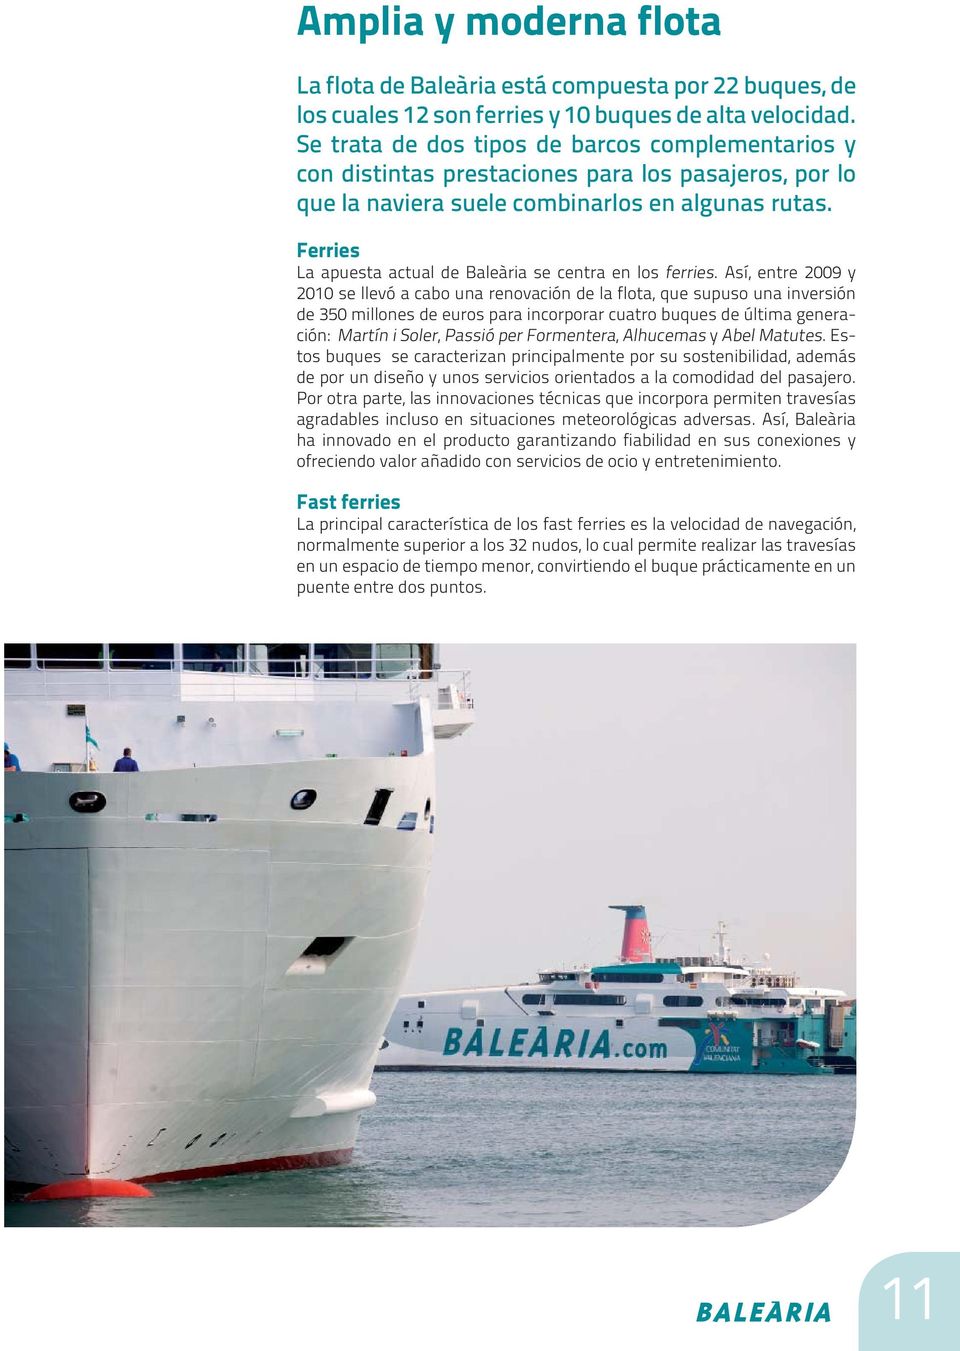 Ferries La apuesta actual de Baleària se centra en los ferries.